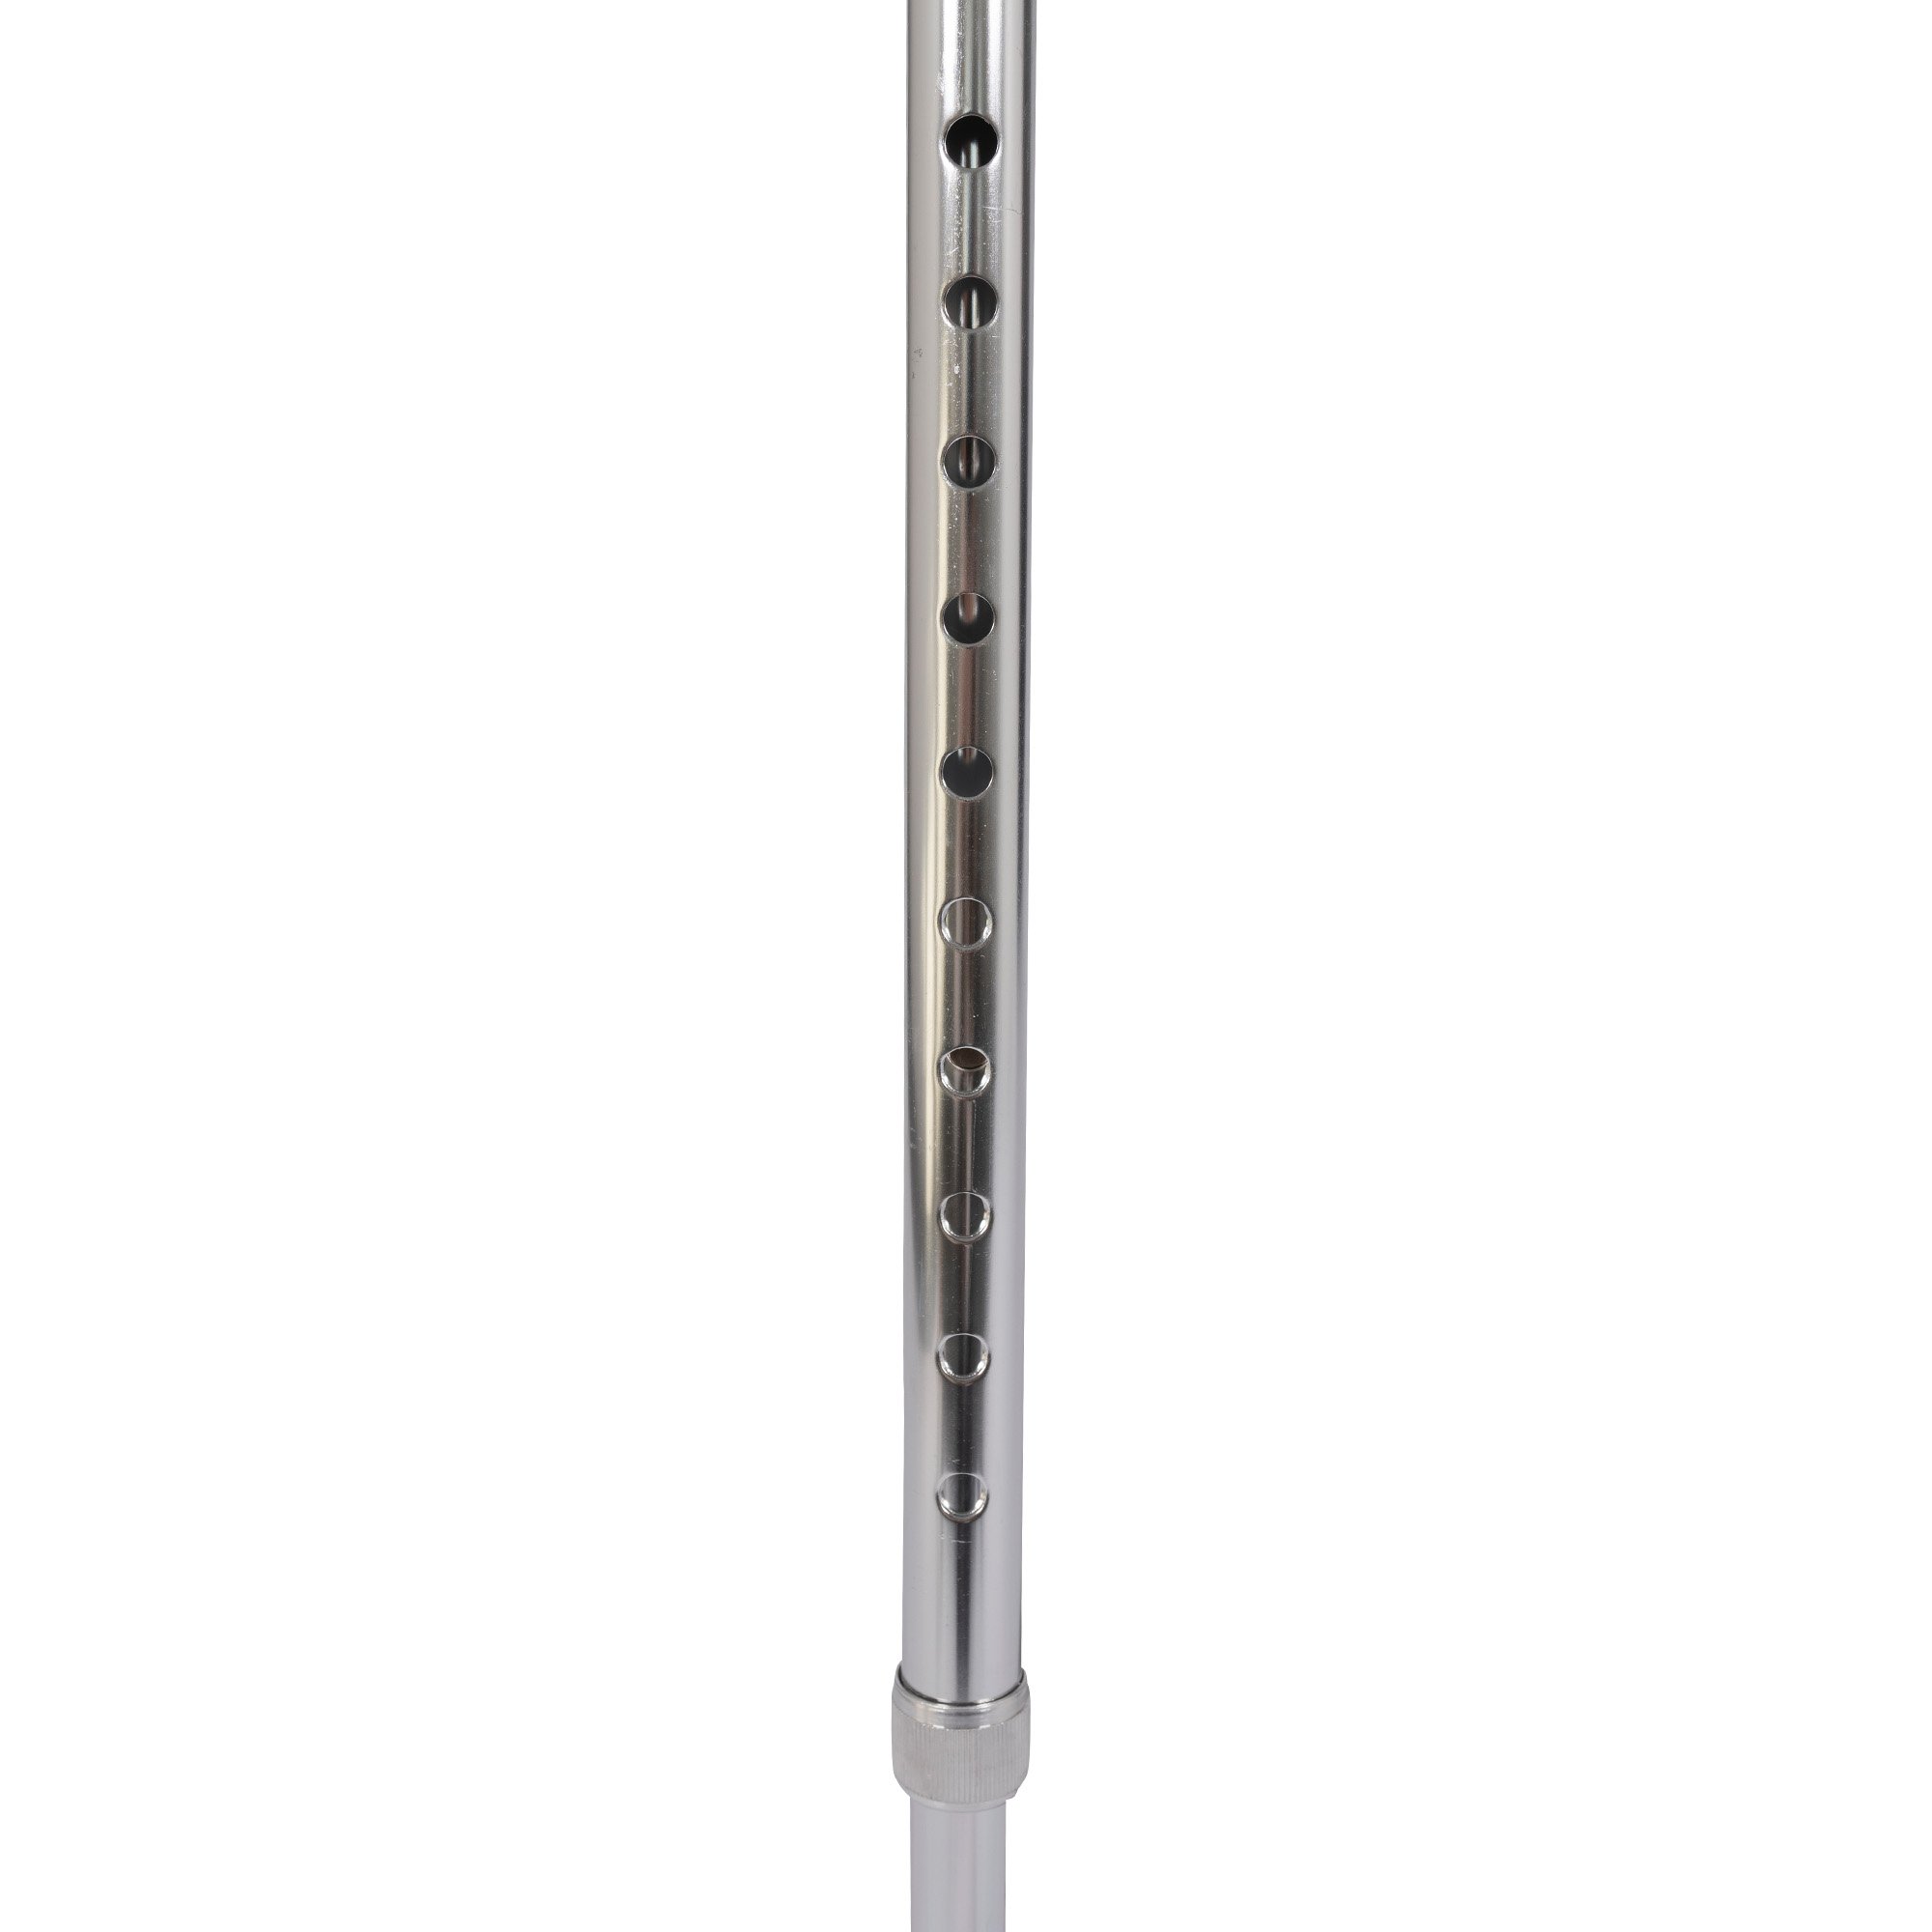 dunimed walking stick wooden handle adjustable adjustment holes